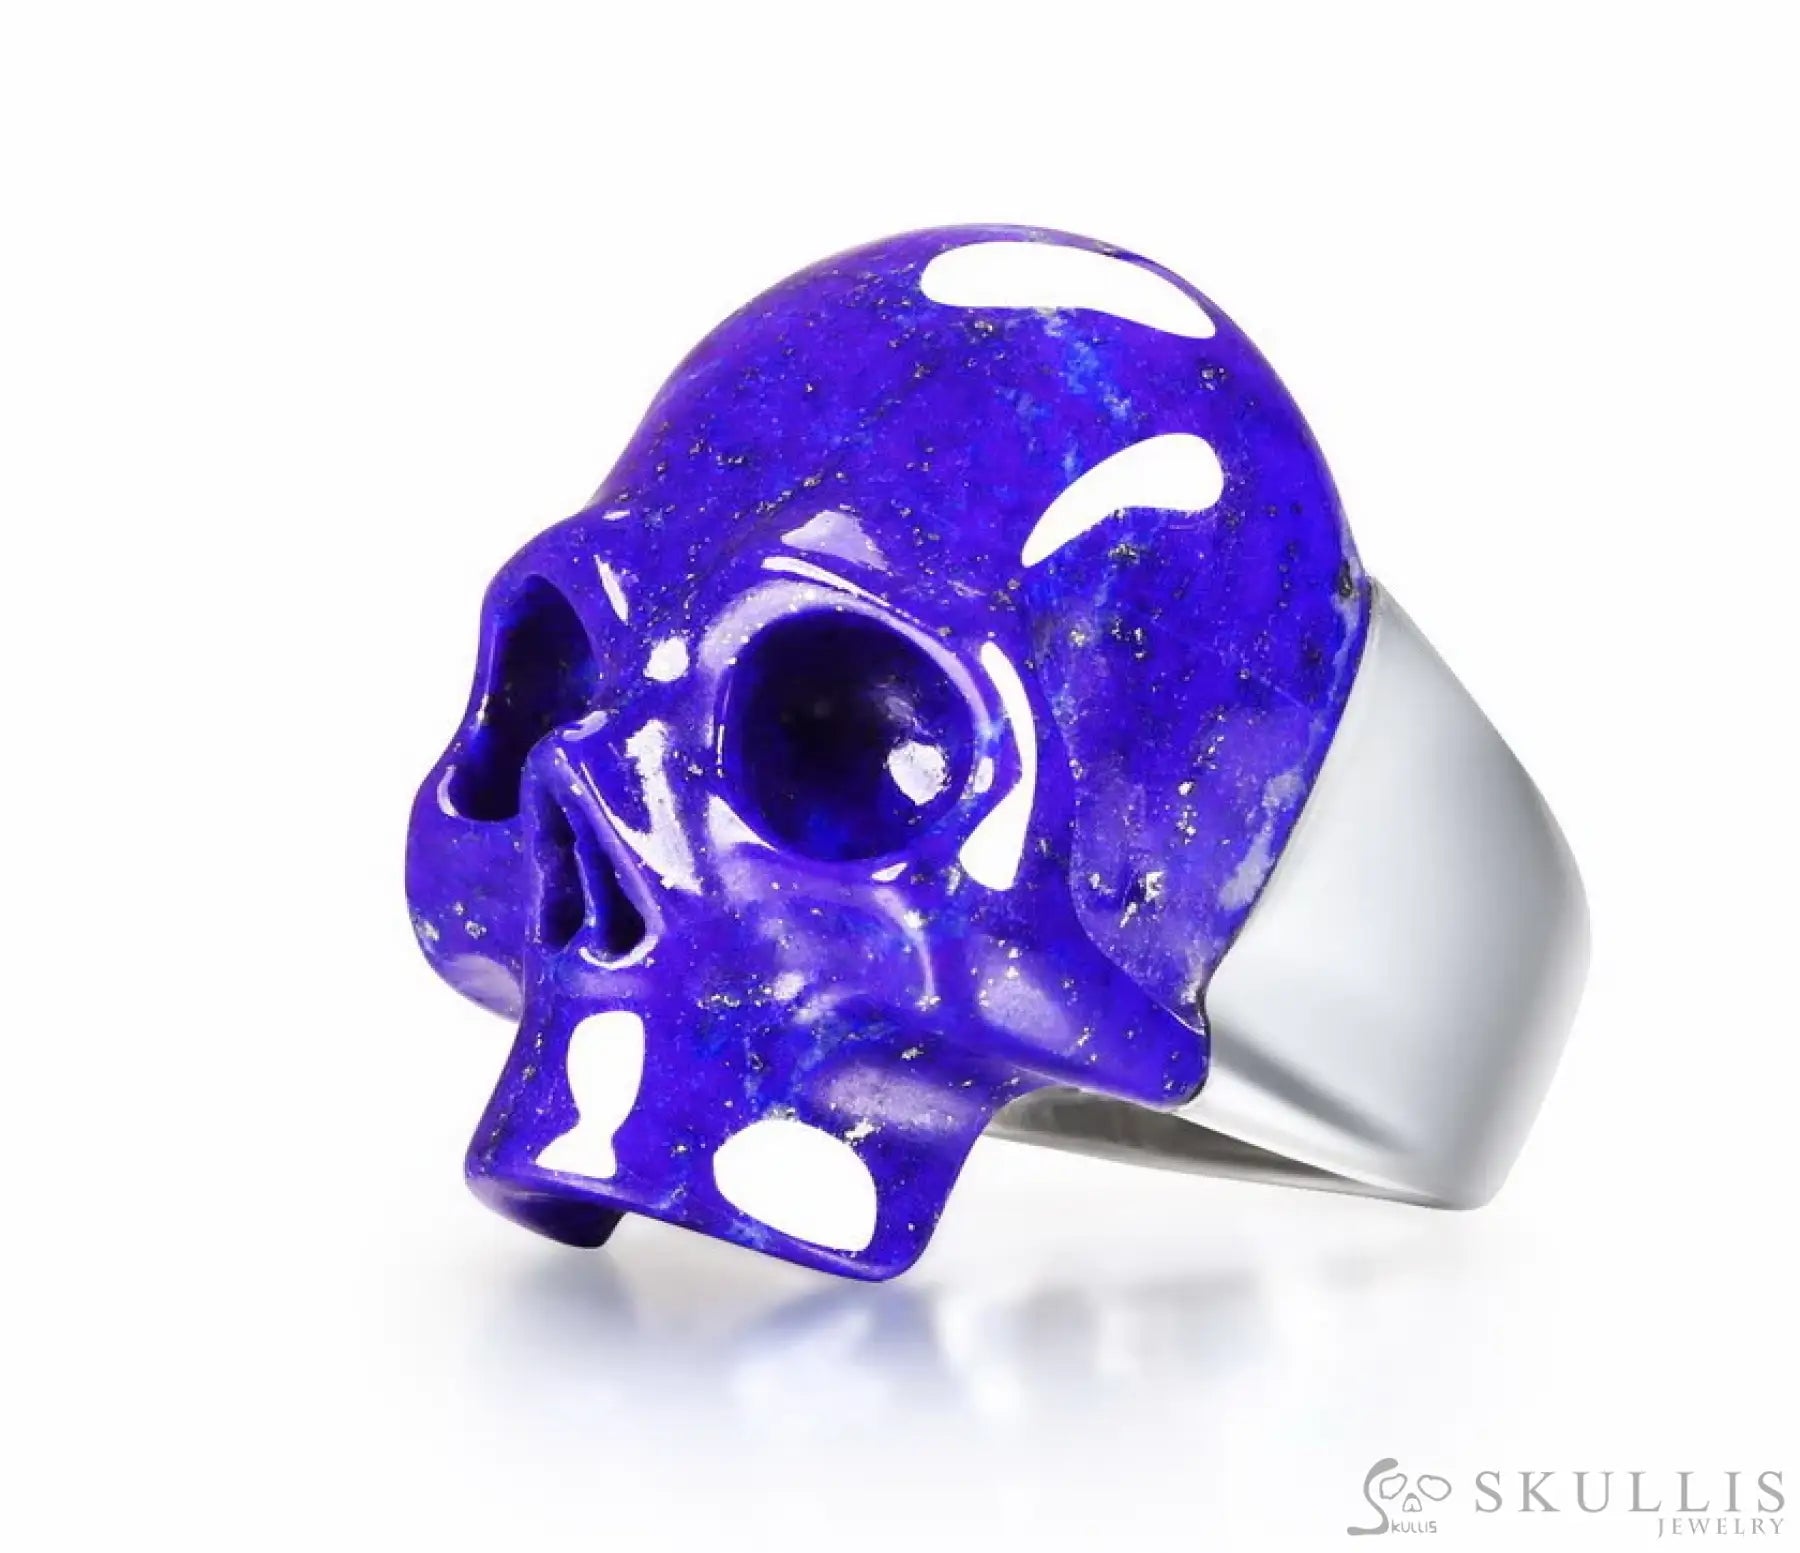 Gem Skull Ring Of Lapis Lazuli Carved Skull In 925 Sterling Silver Skull Rings